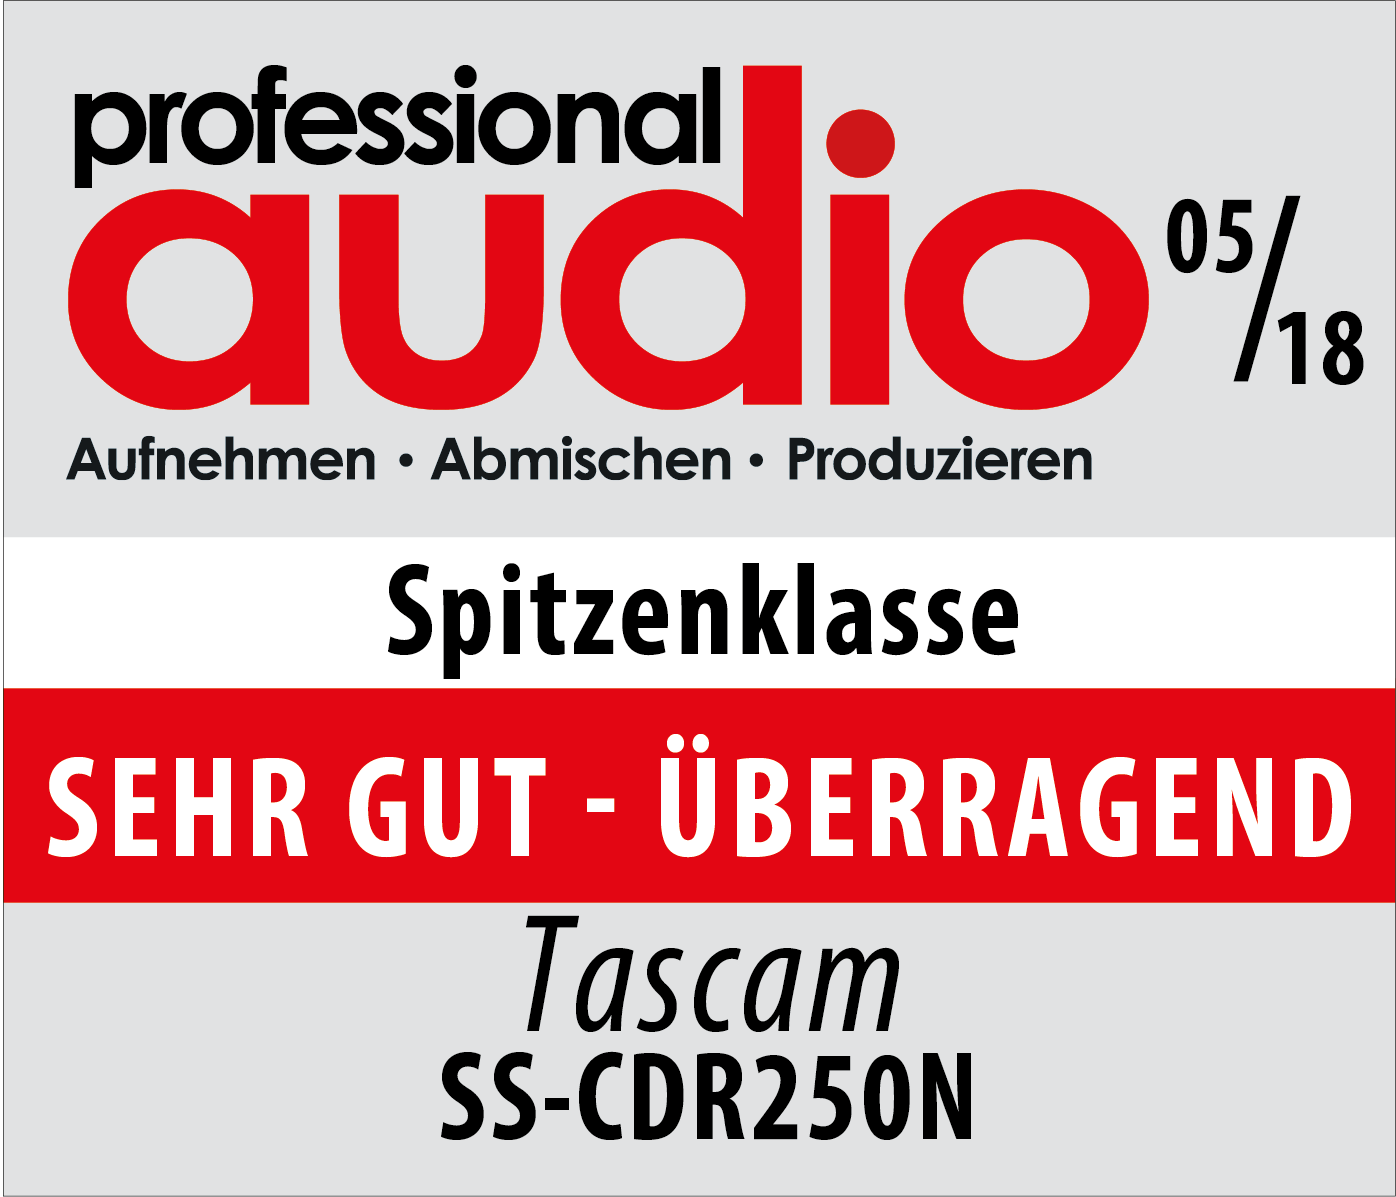 Tascam SS-CDR250: Vom Professional Audio Magazin mit dem Testsiegel „Sehr gut – Überragend“ ausgezeichnet